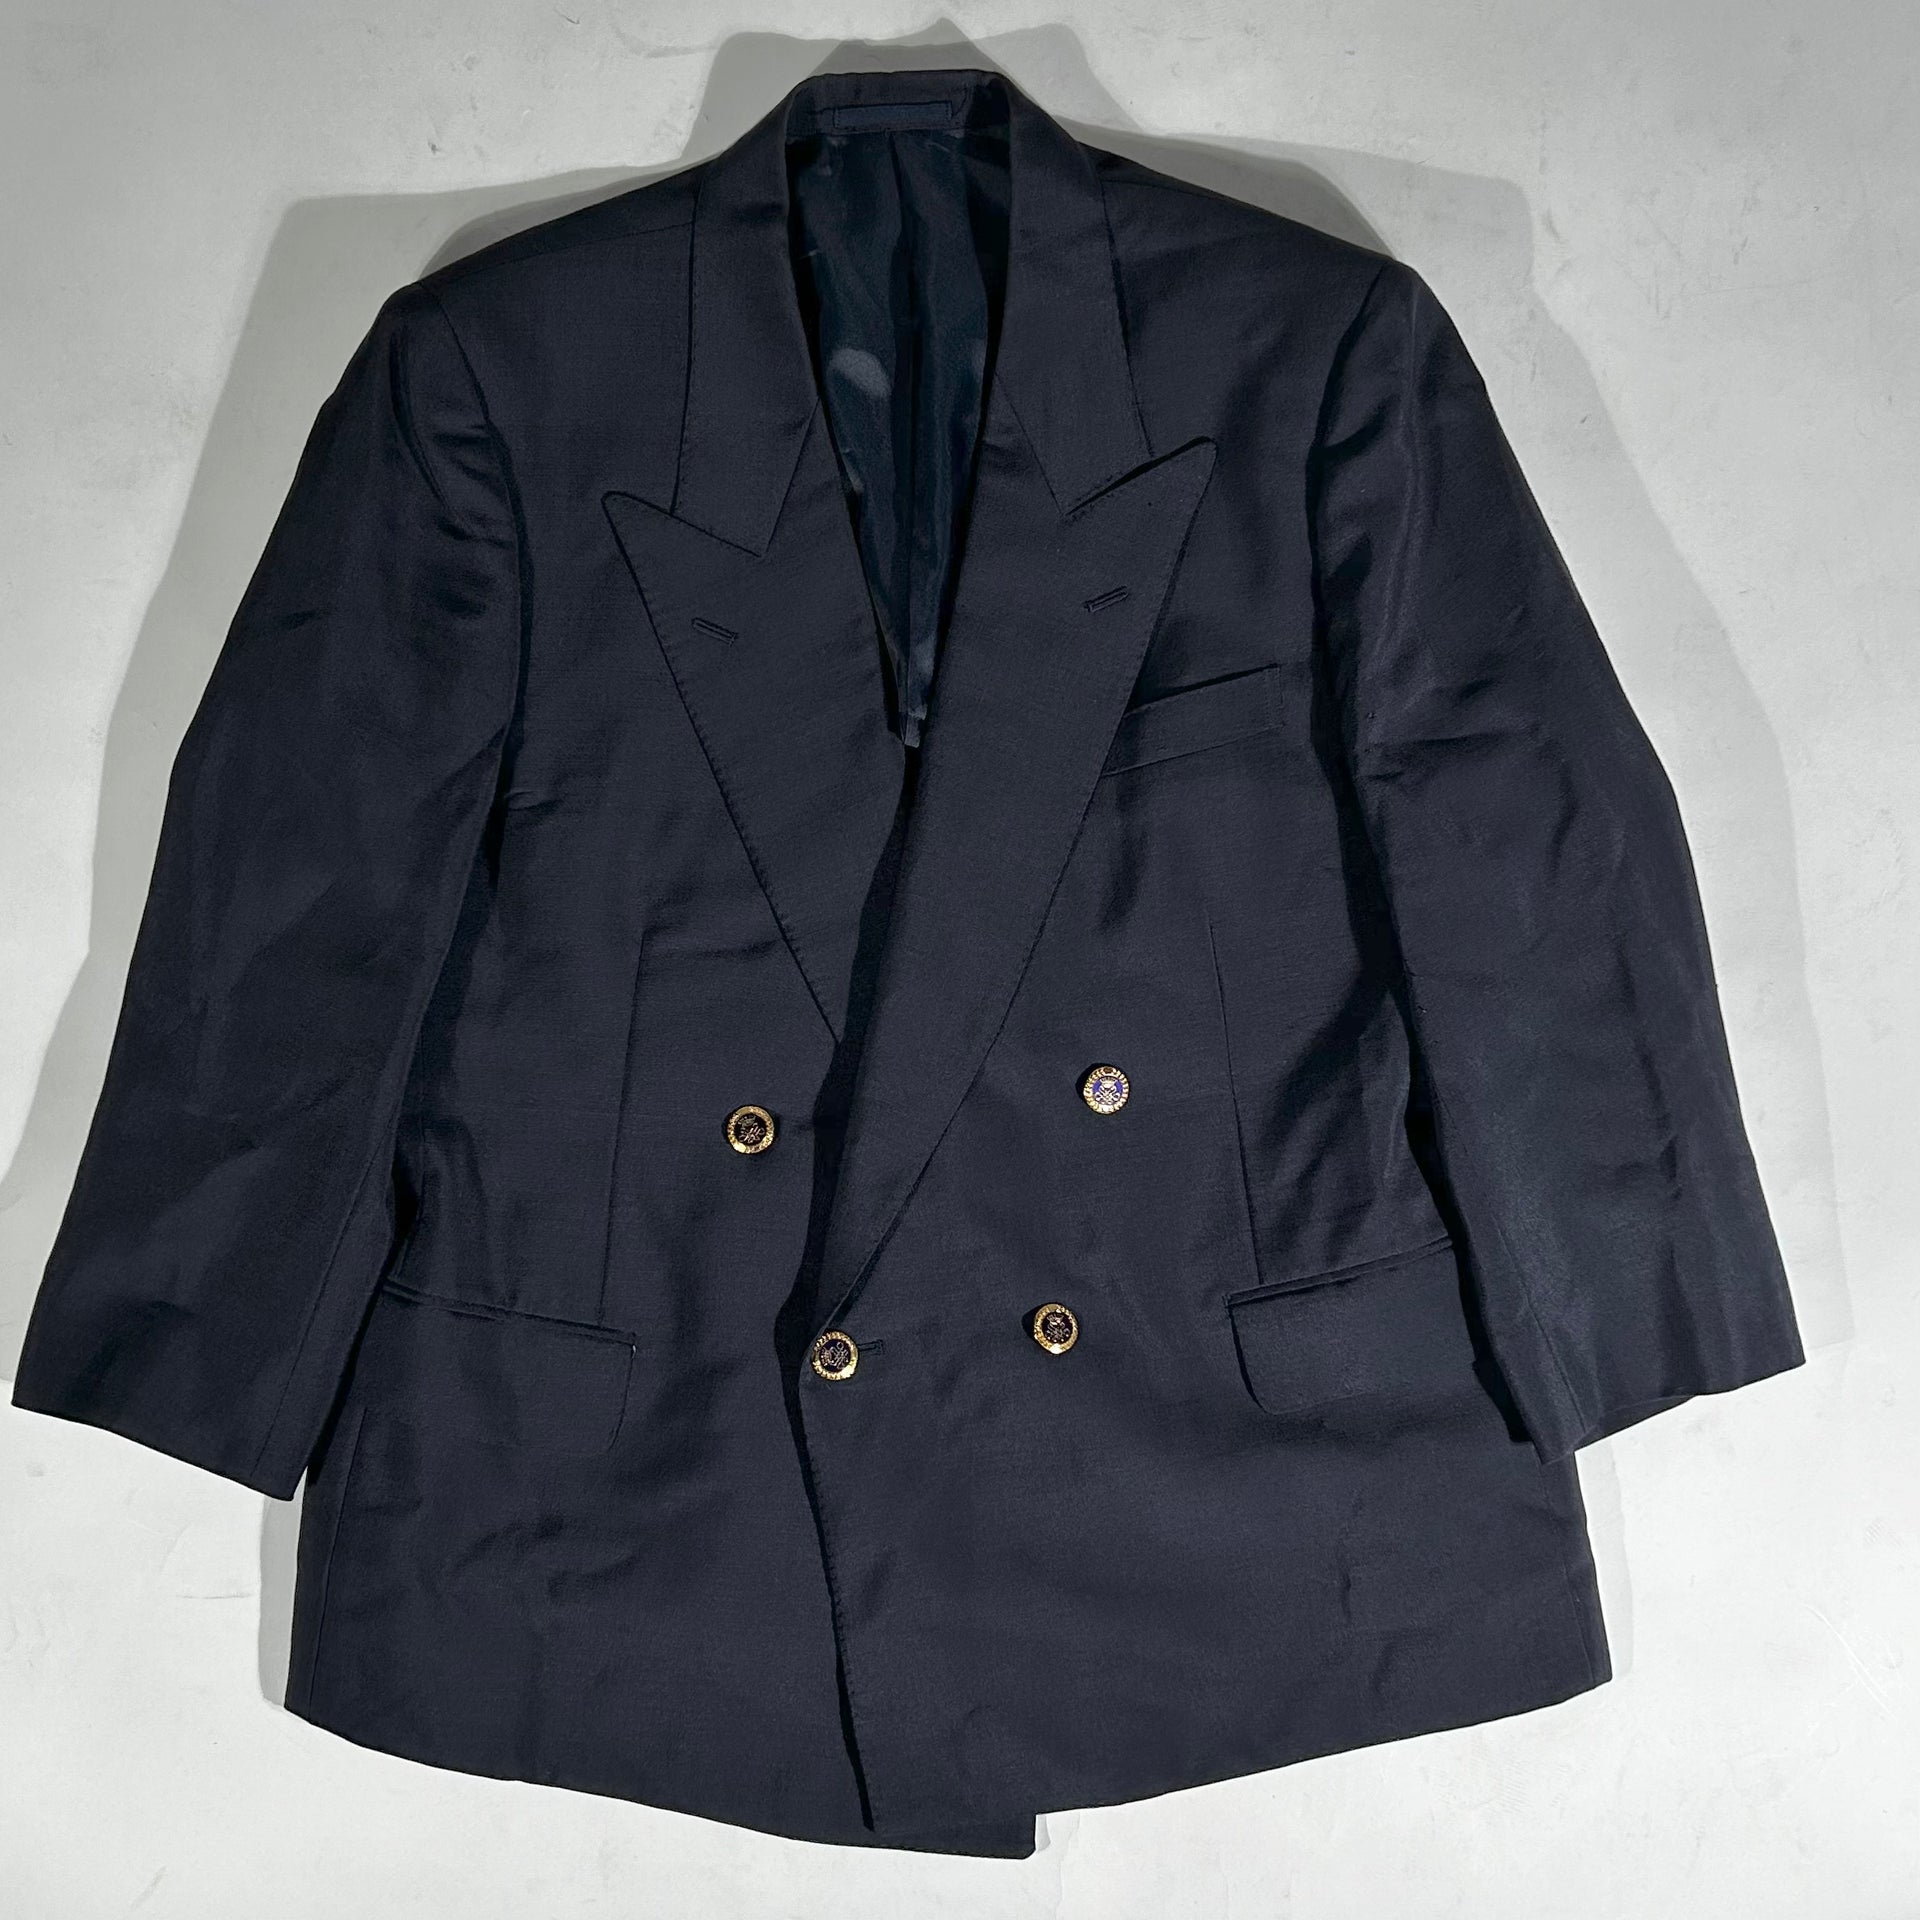 Vintage blue tailored jacket